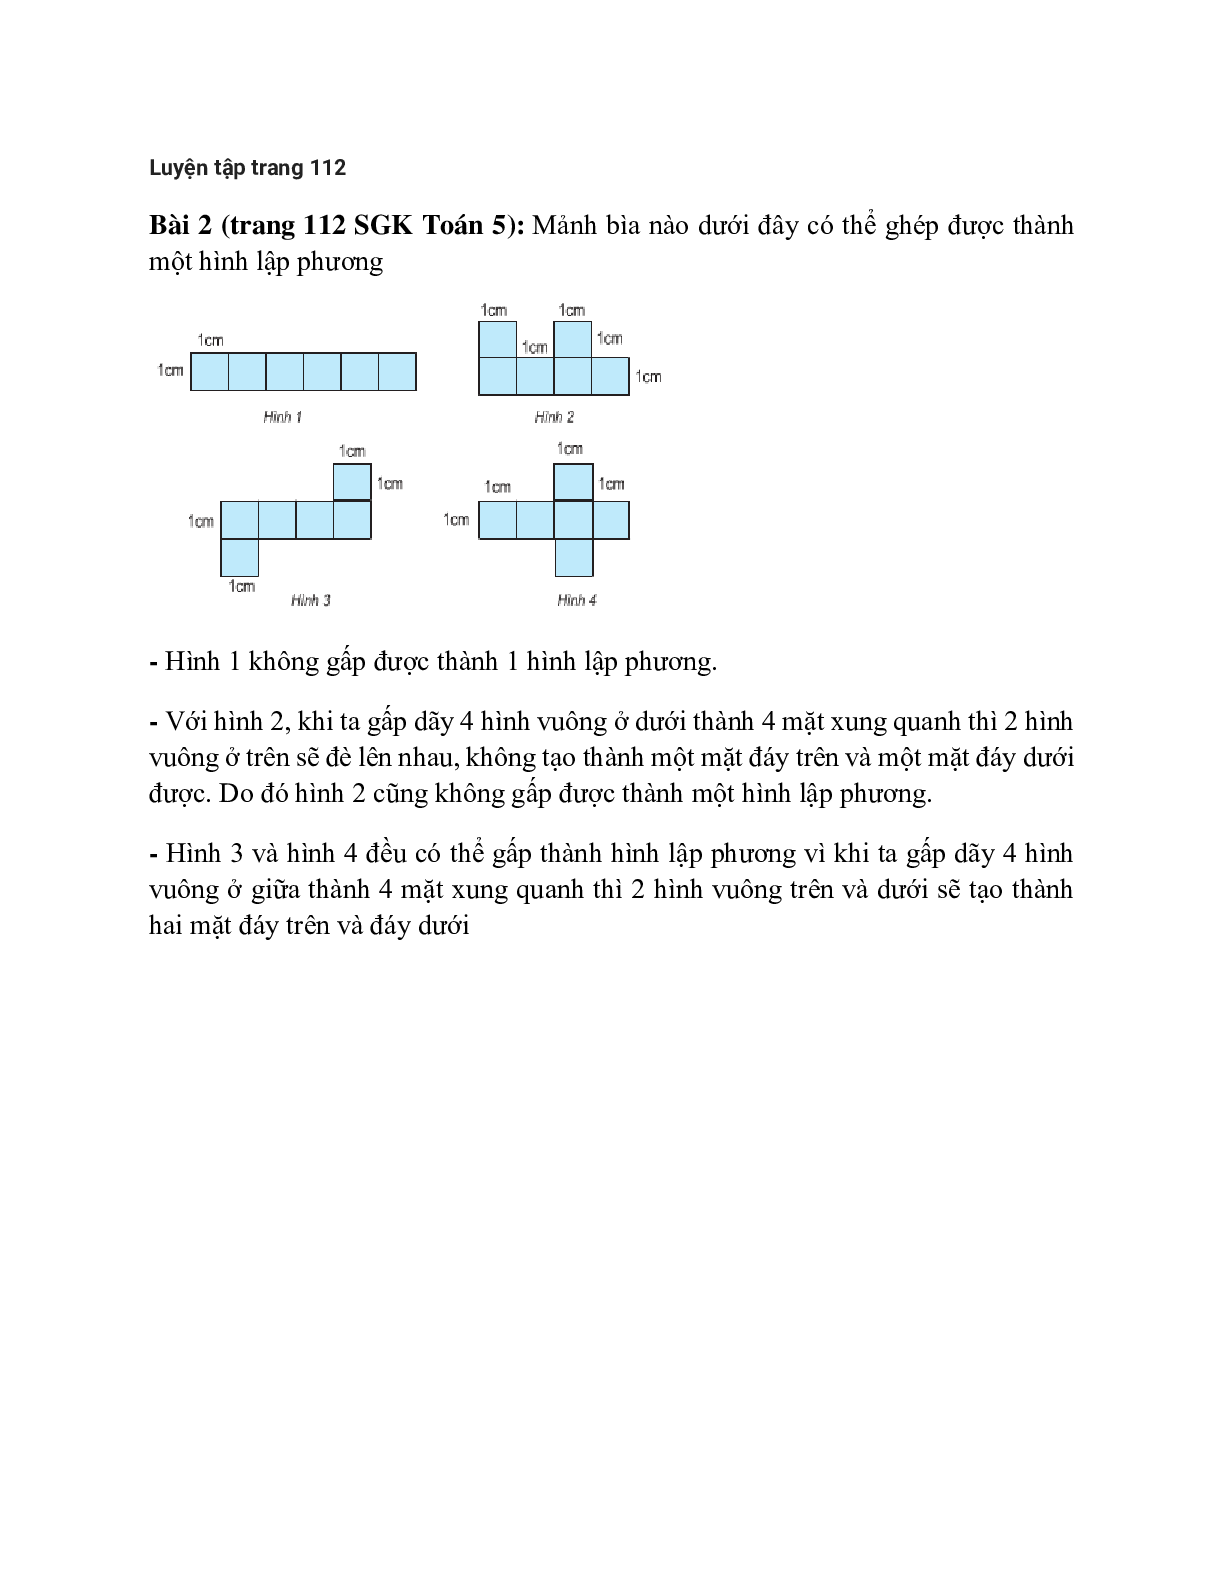 Mảnh bìa nào dưới đây có thể ghép được thành một hình lập phương (trang 1)